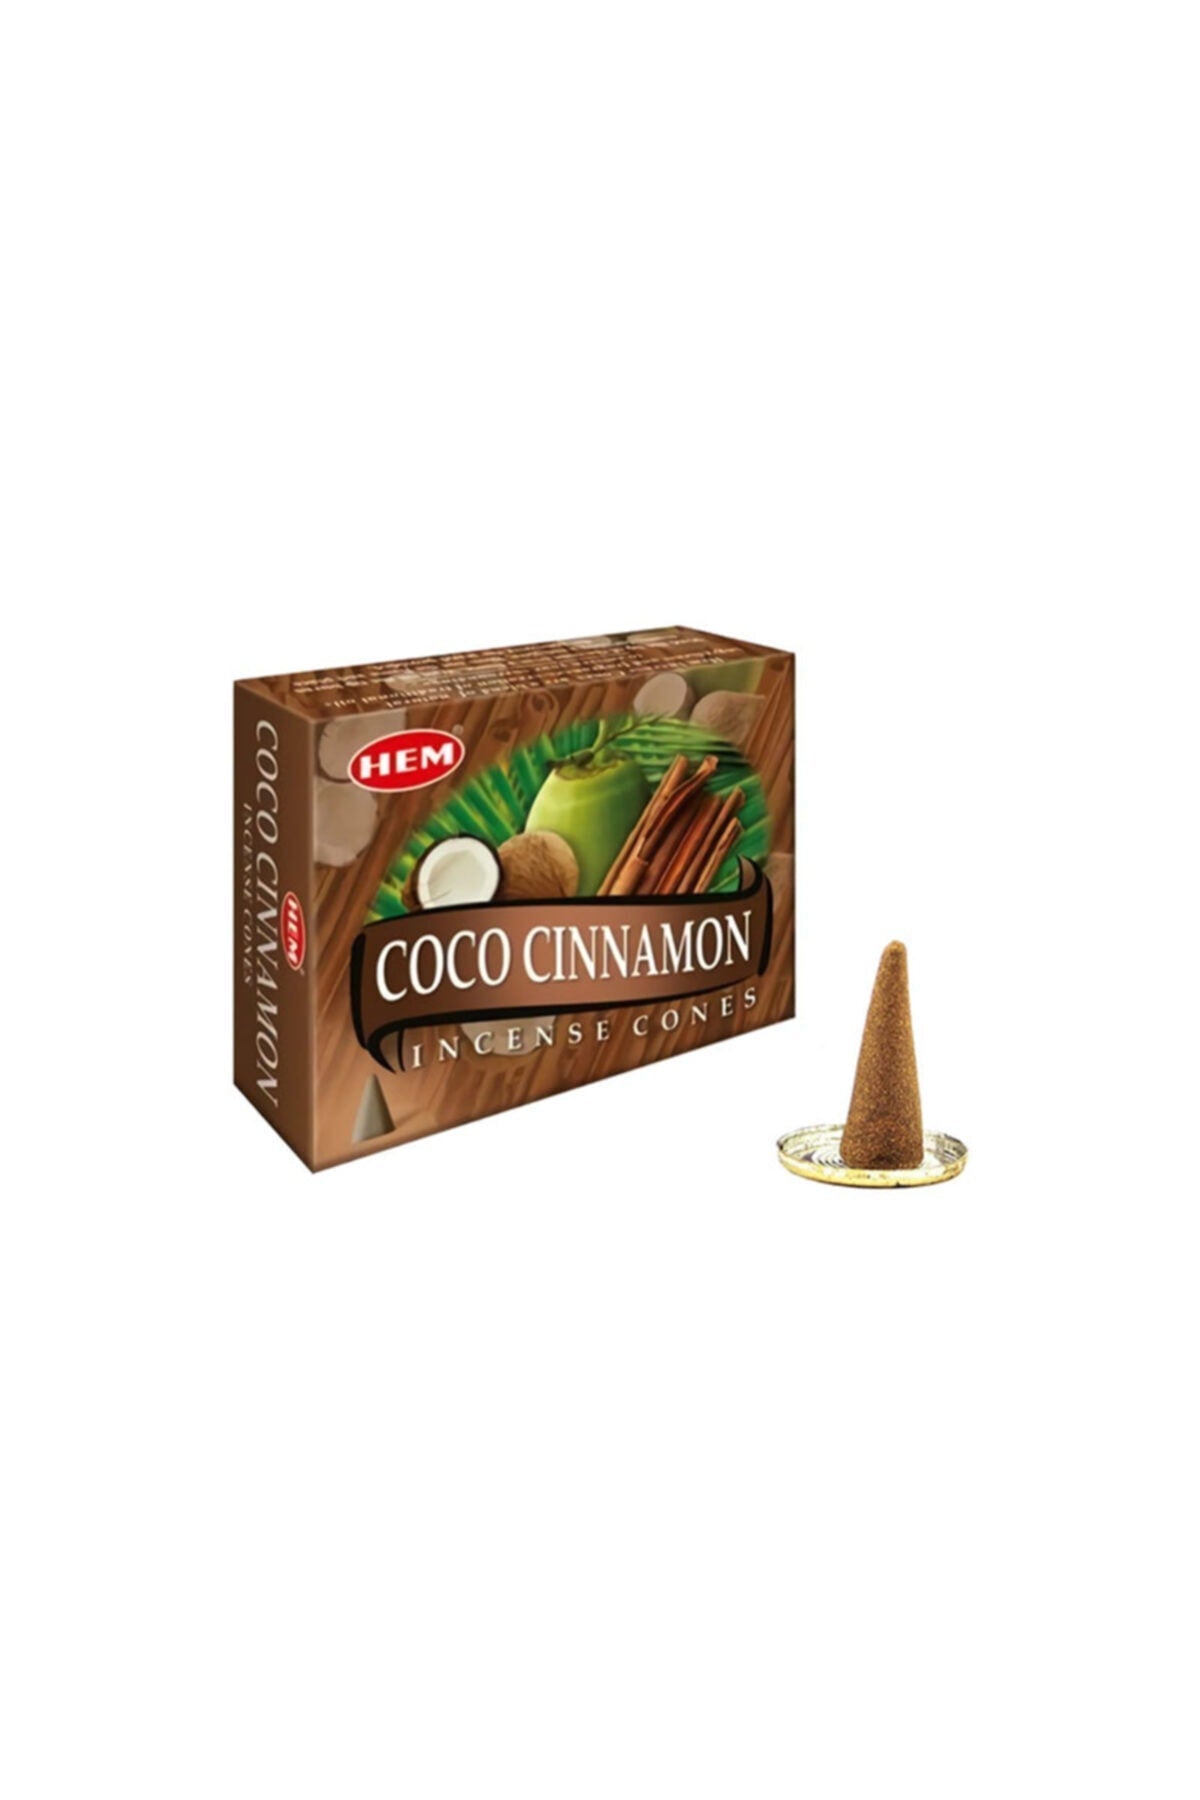 Coco Cinnamon Incense Cones - Crystals Shop, Gems + Wholesale Sage by Liv Rocks